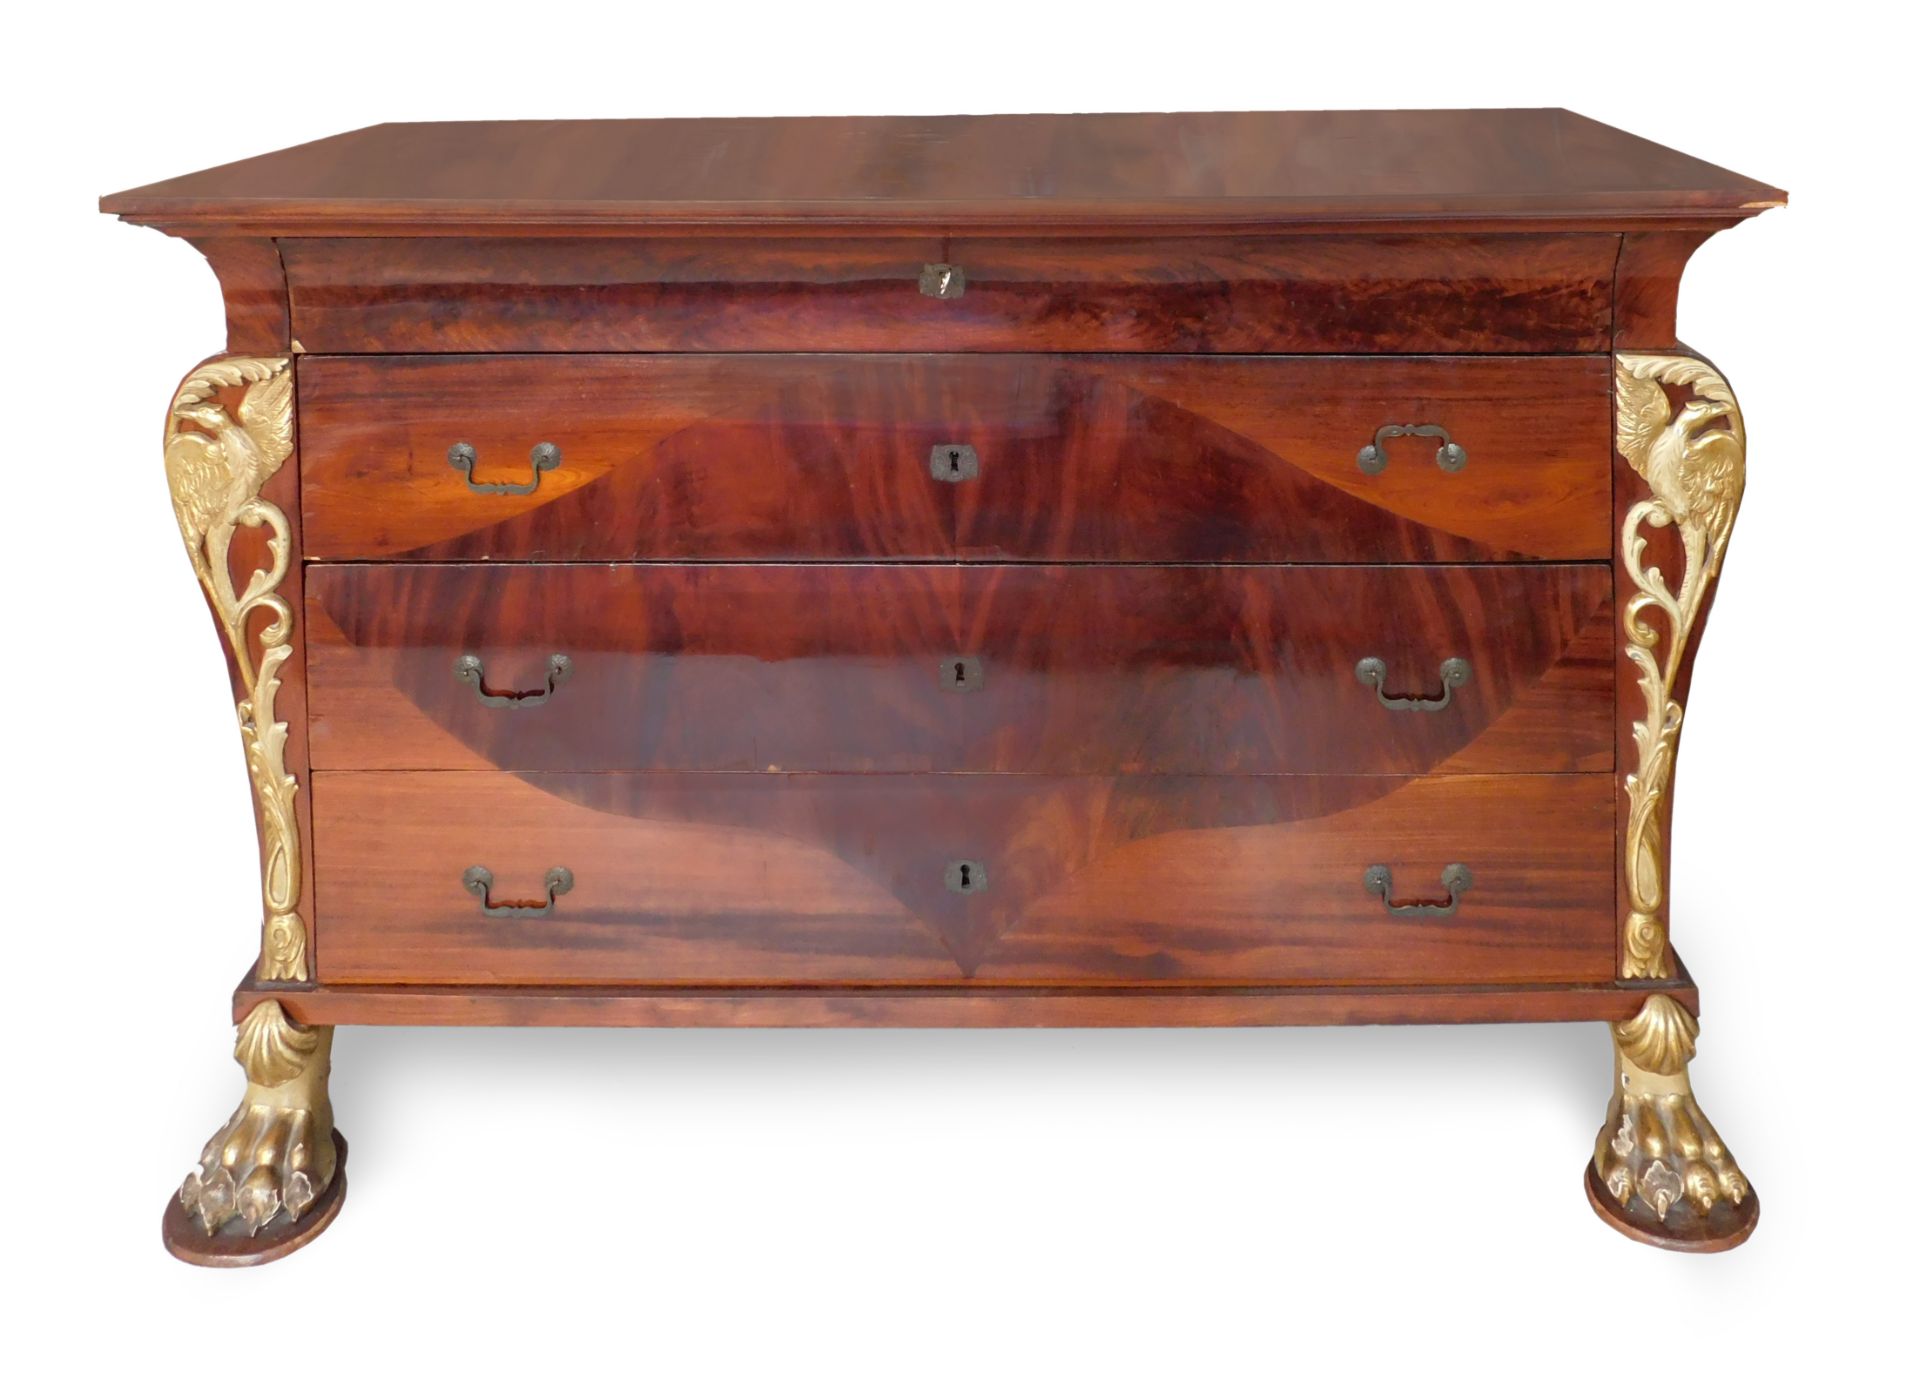 A Spanish Fernandino period mahogany chest of drawers circa 1800-1830